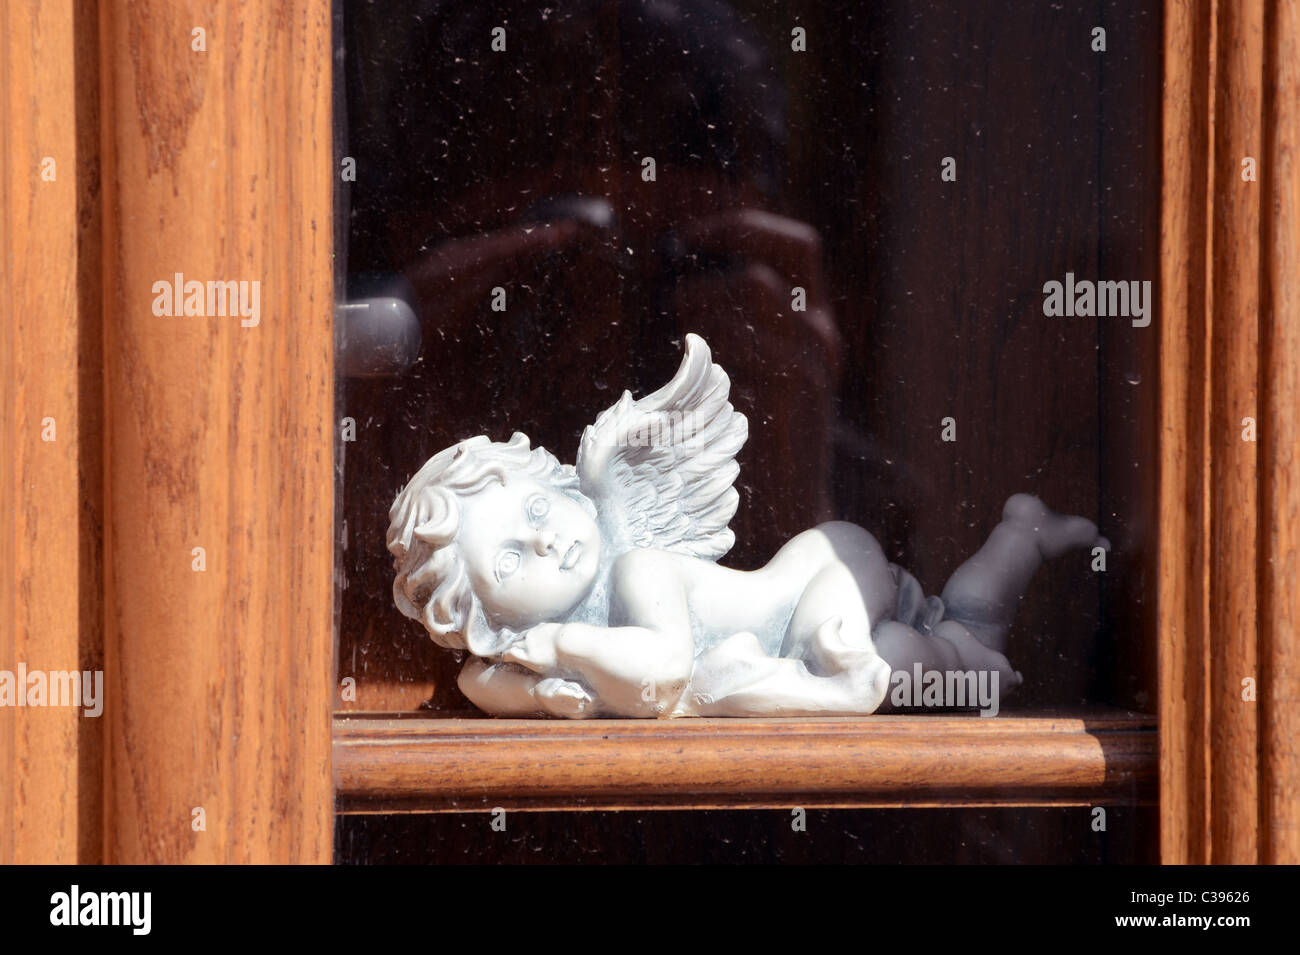 Bianco di ceramica angelo sulla finestra in legno davanzale dietro il vetro. Foto Stock